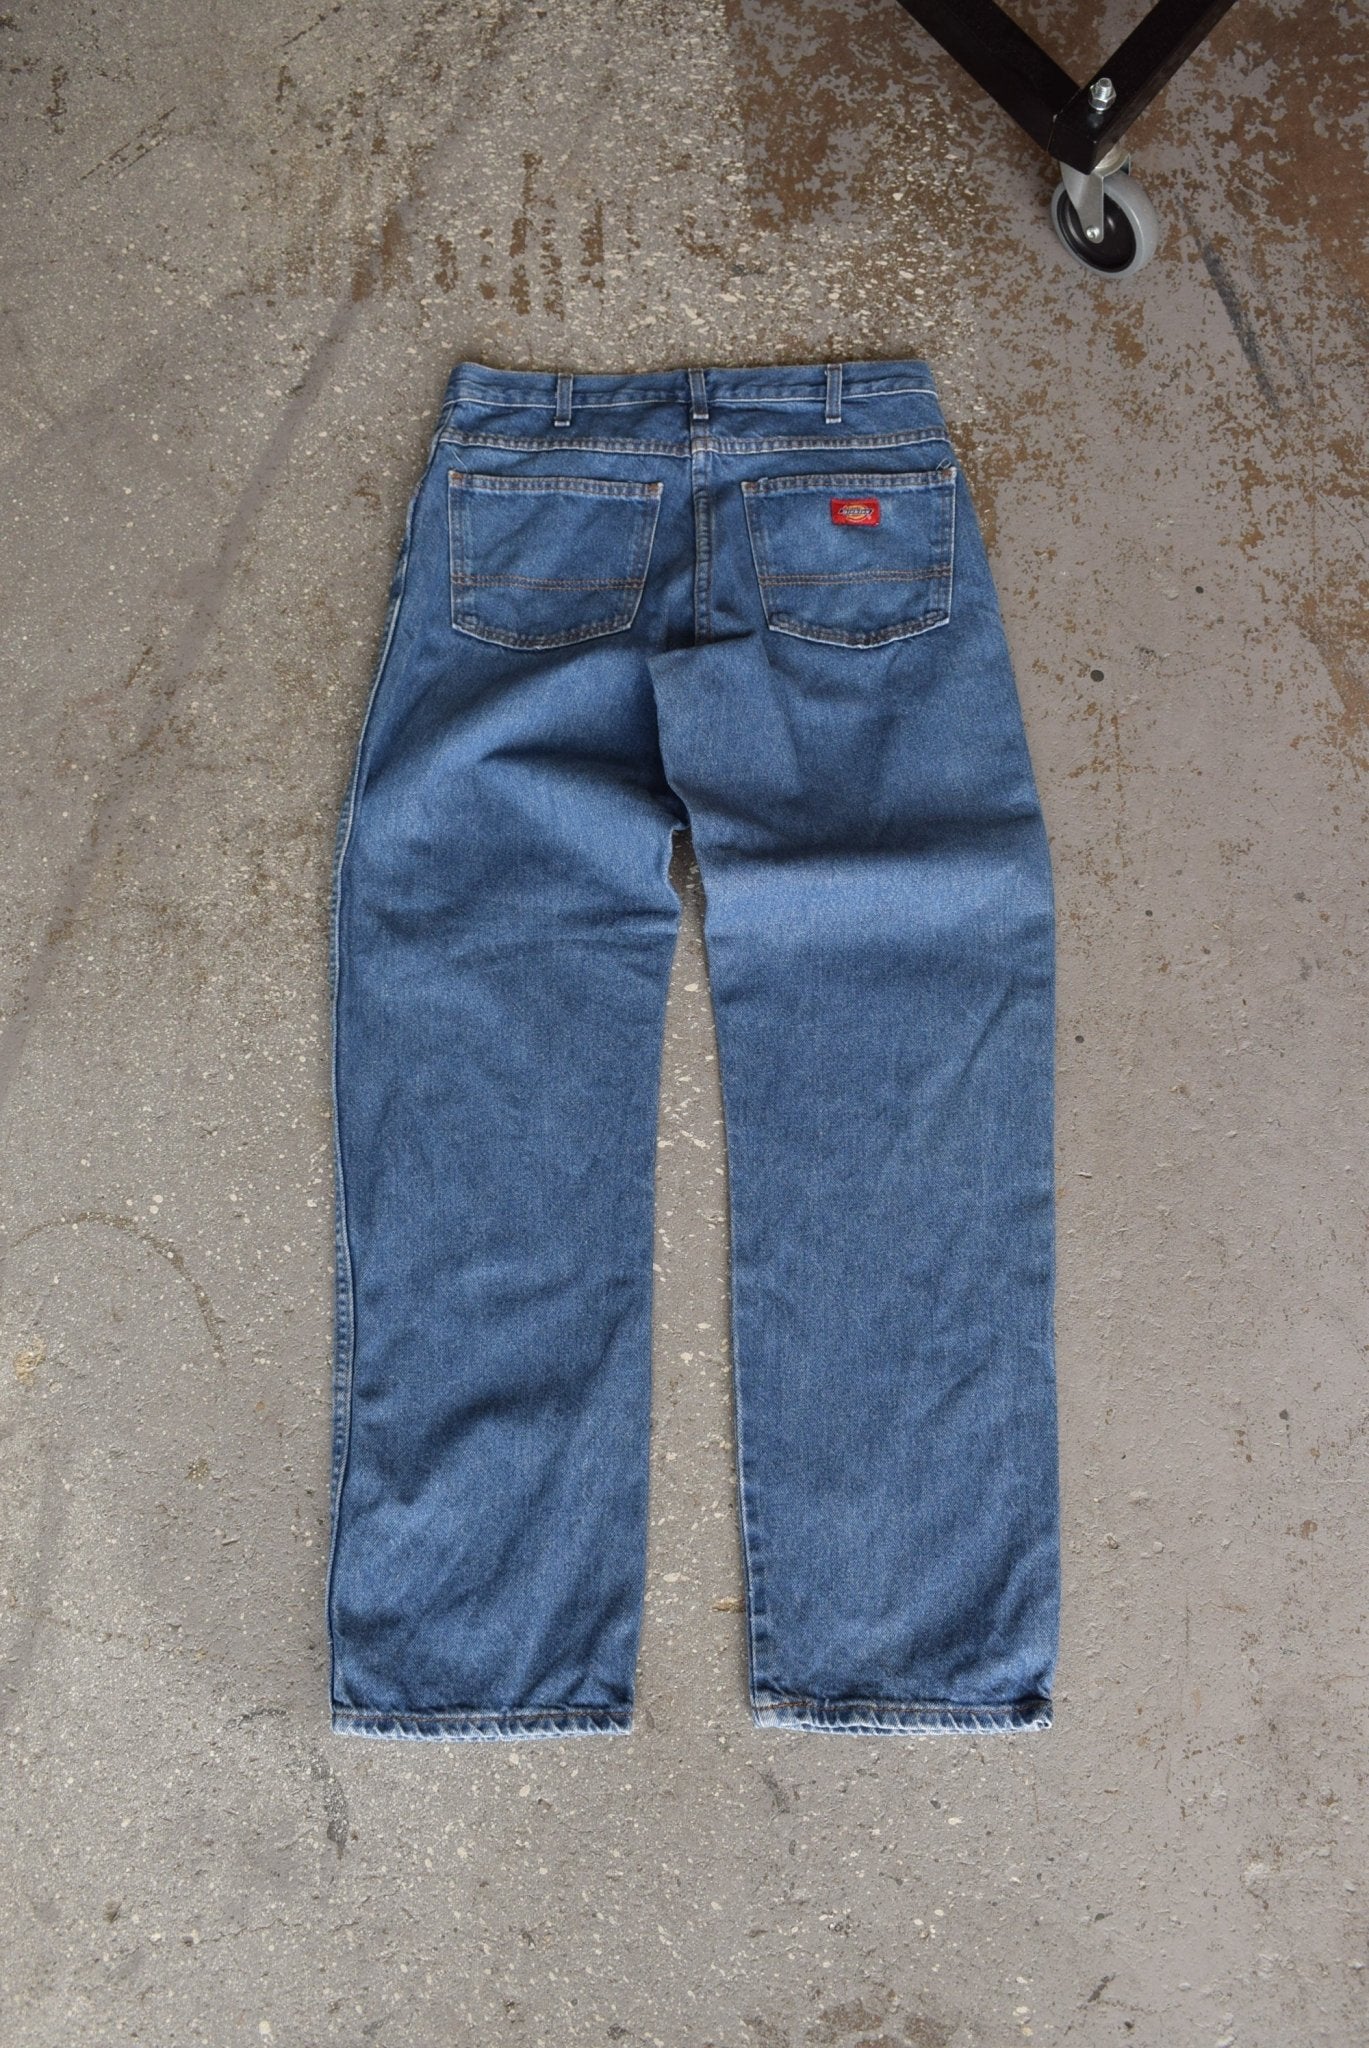 Vintage Dickies Workwear Jeans (32) - Retrospective Store